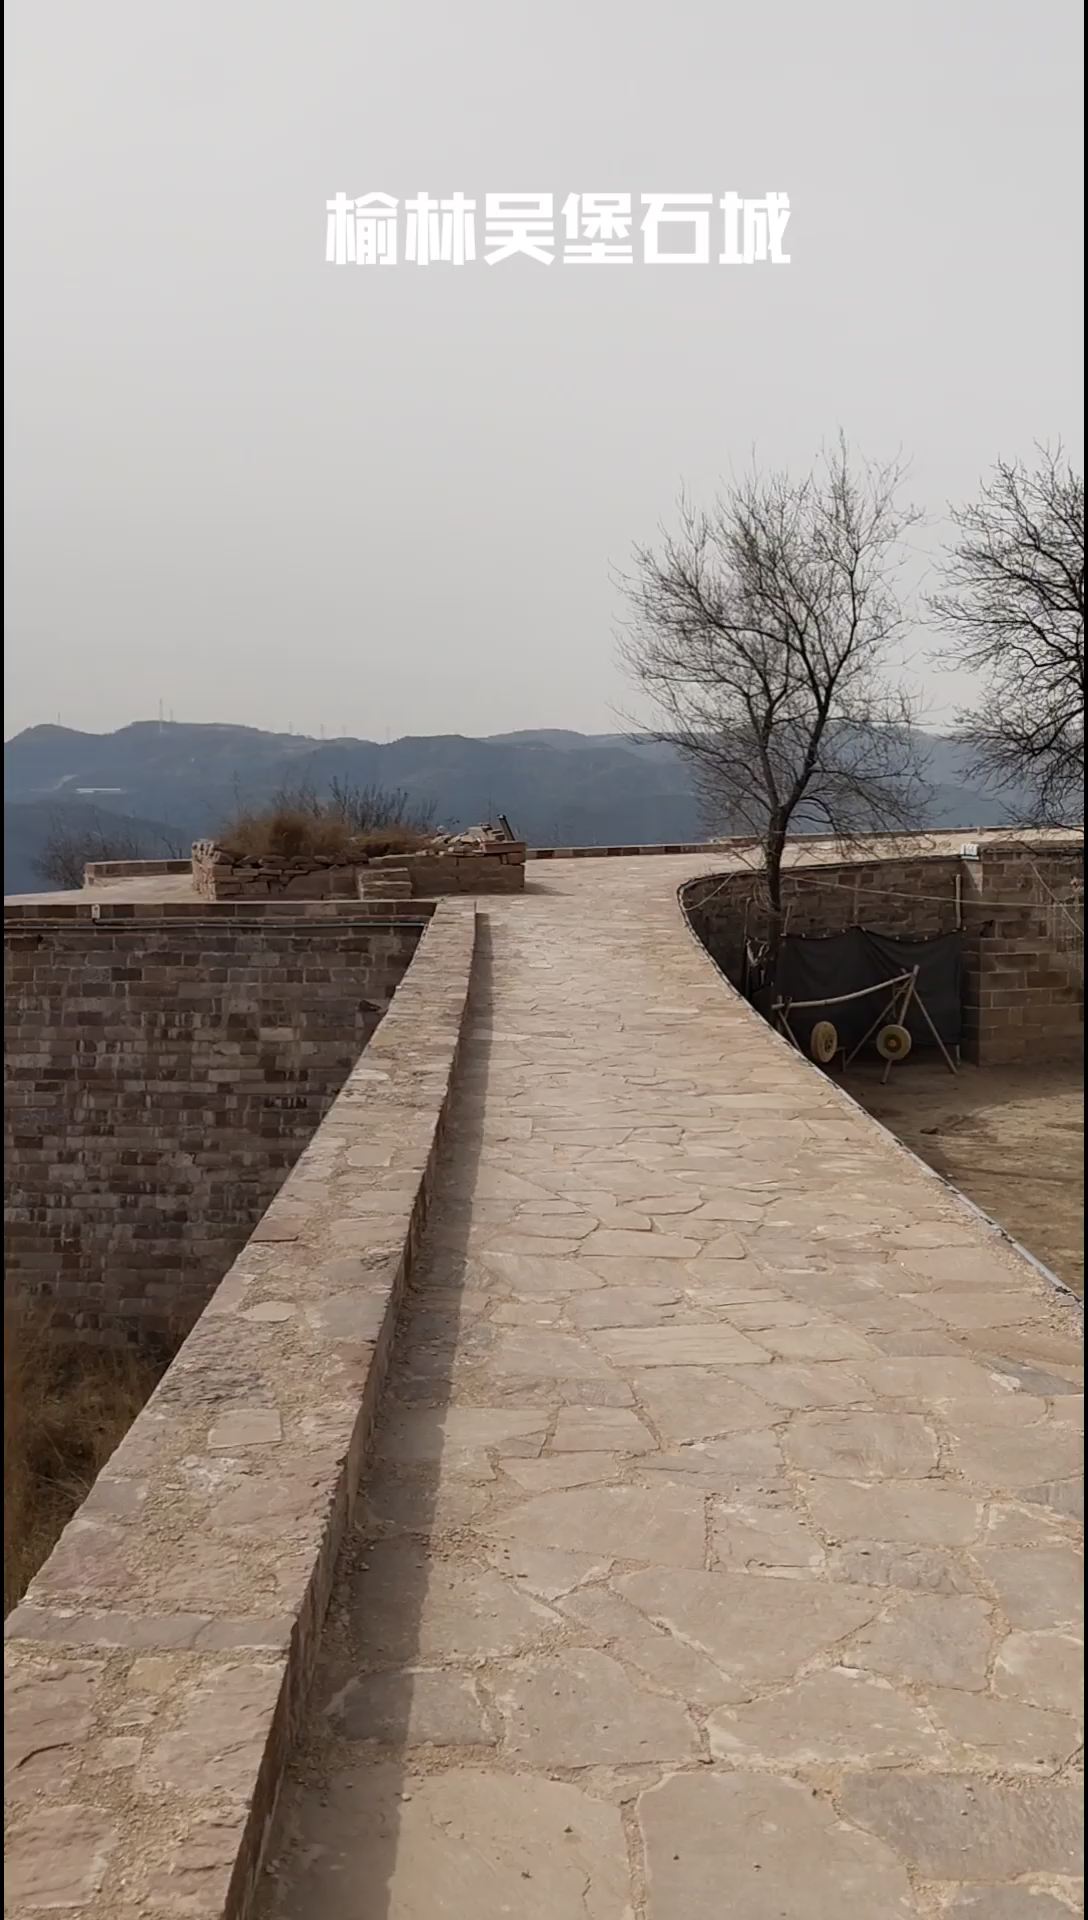 吴堡石城，位于陕西省榆林市吴堡县，靠黄河而建，始建于汉代，是保存最完整的一座石头城，目前这边还不收门